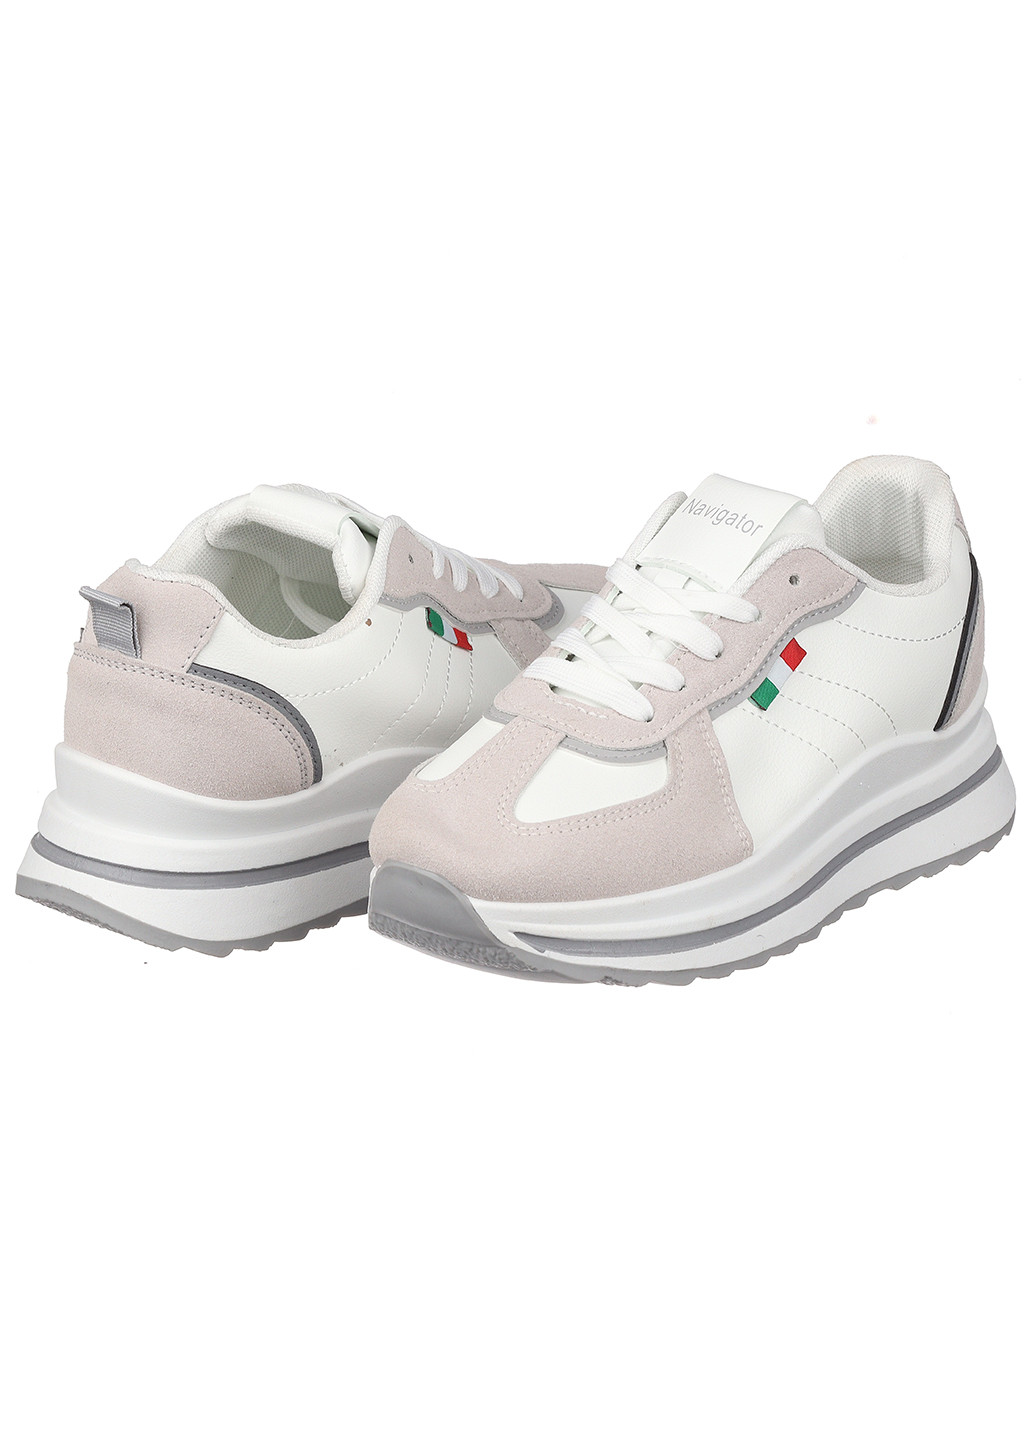 Білі осінні жіночі кросівки зі штучної шкіри Navigator 7025-1